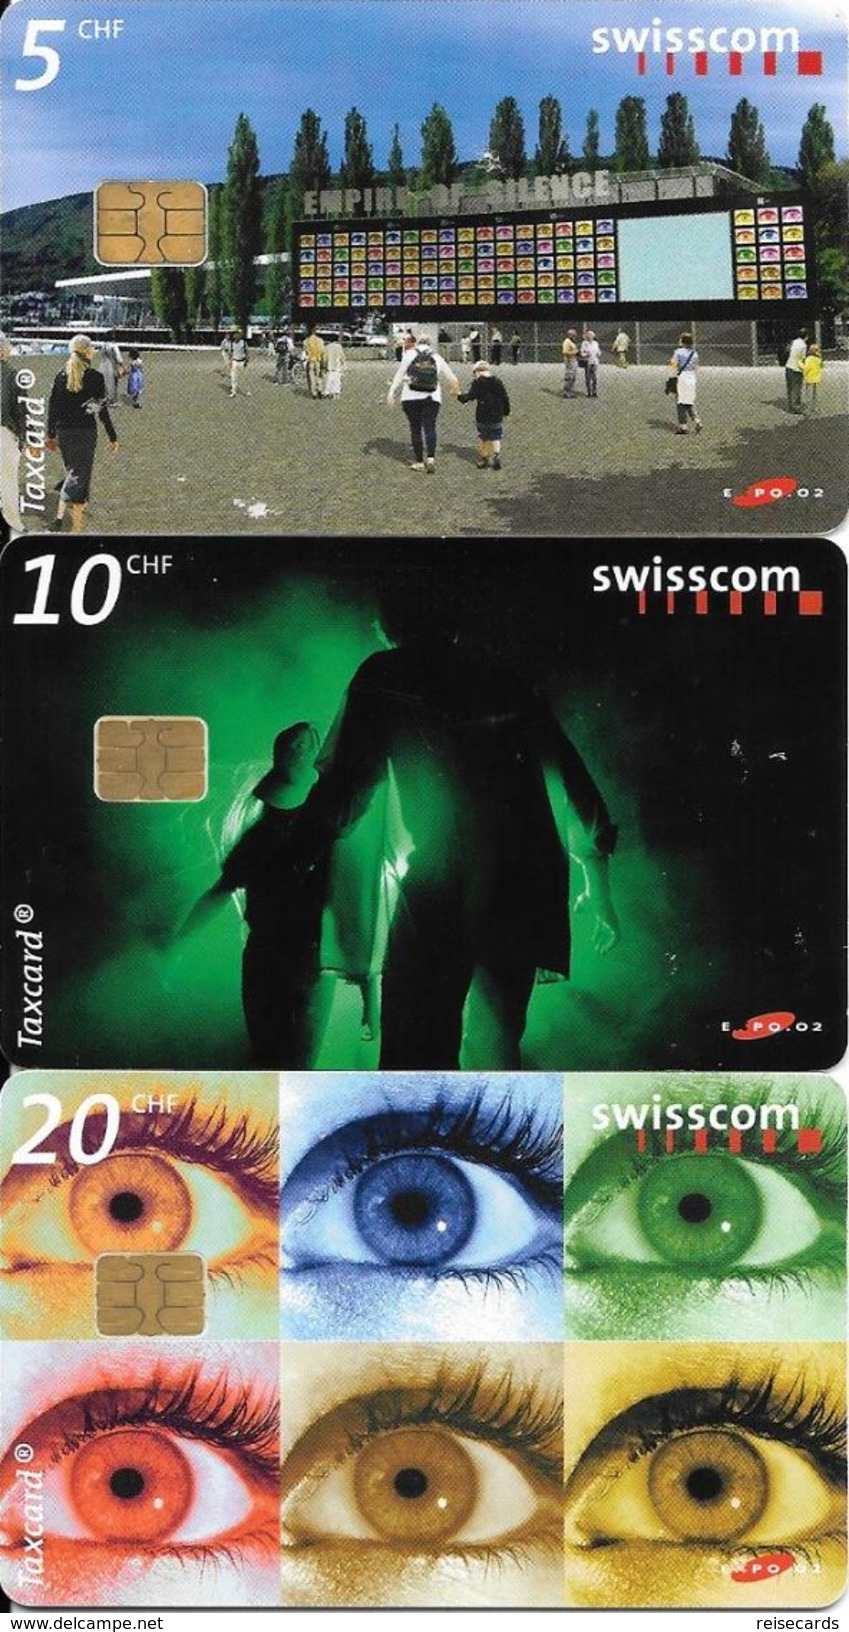 Swisscom: CP121-123 Swisscom-Expo 02 - Empire Of Silence - Schweiz